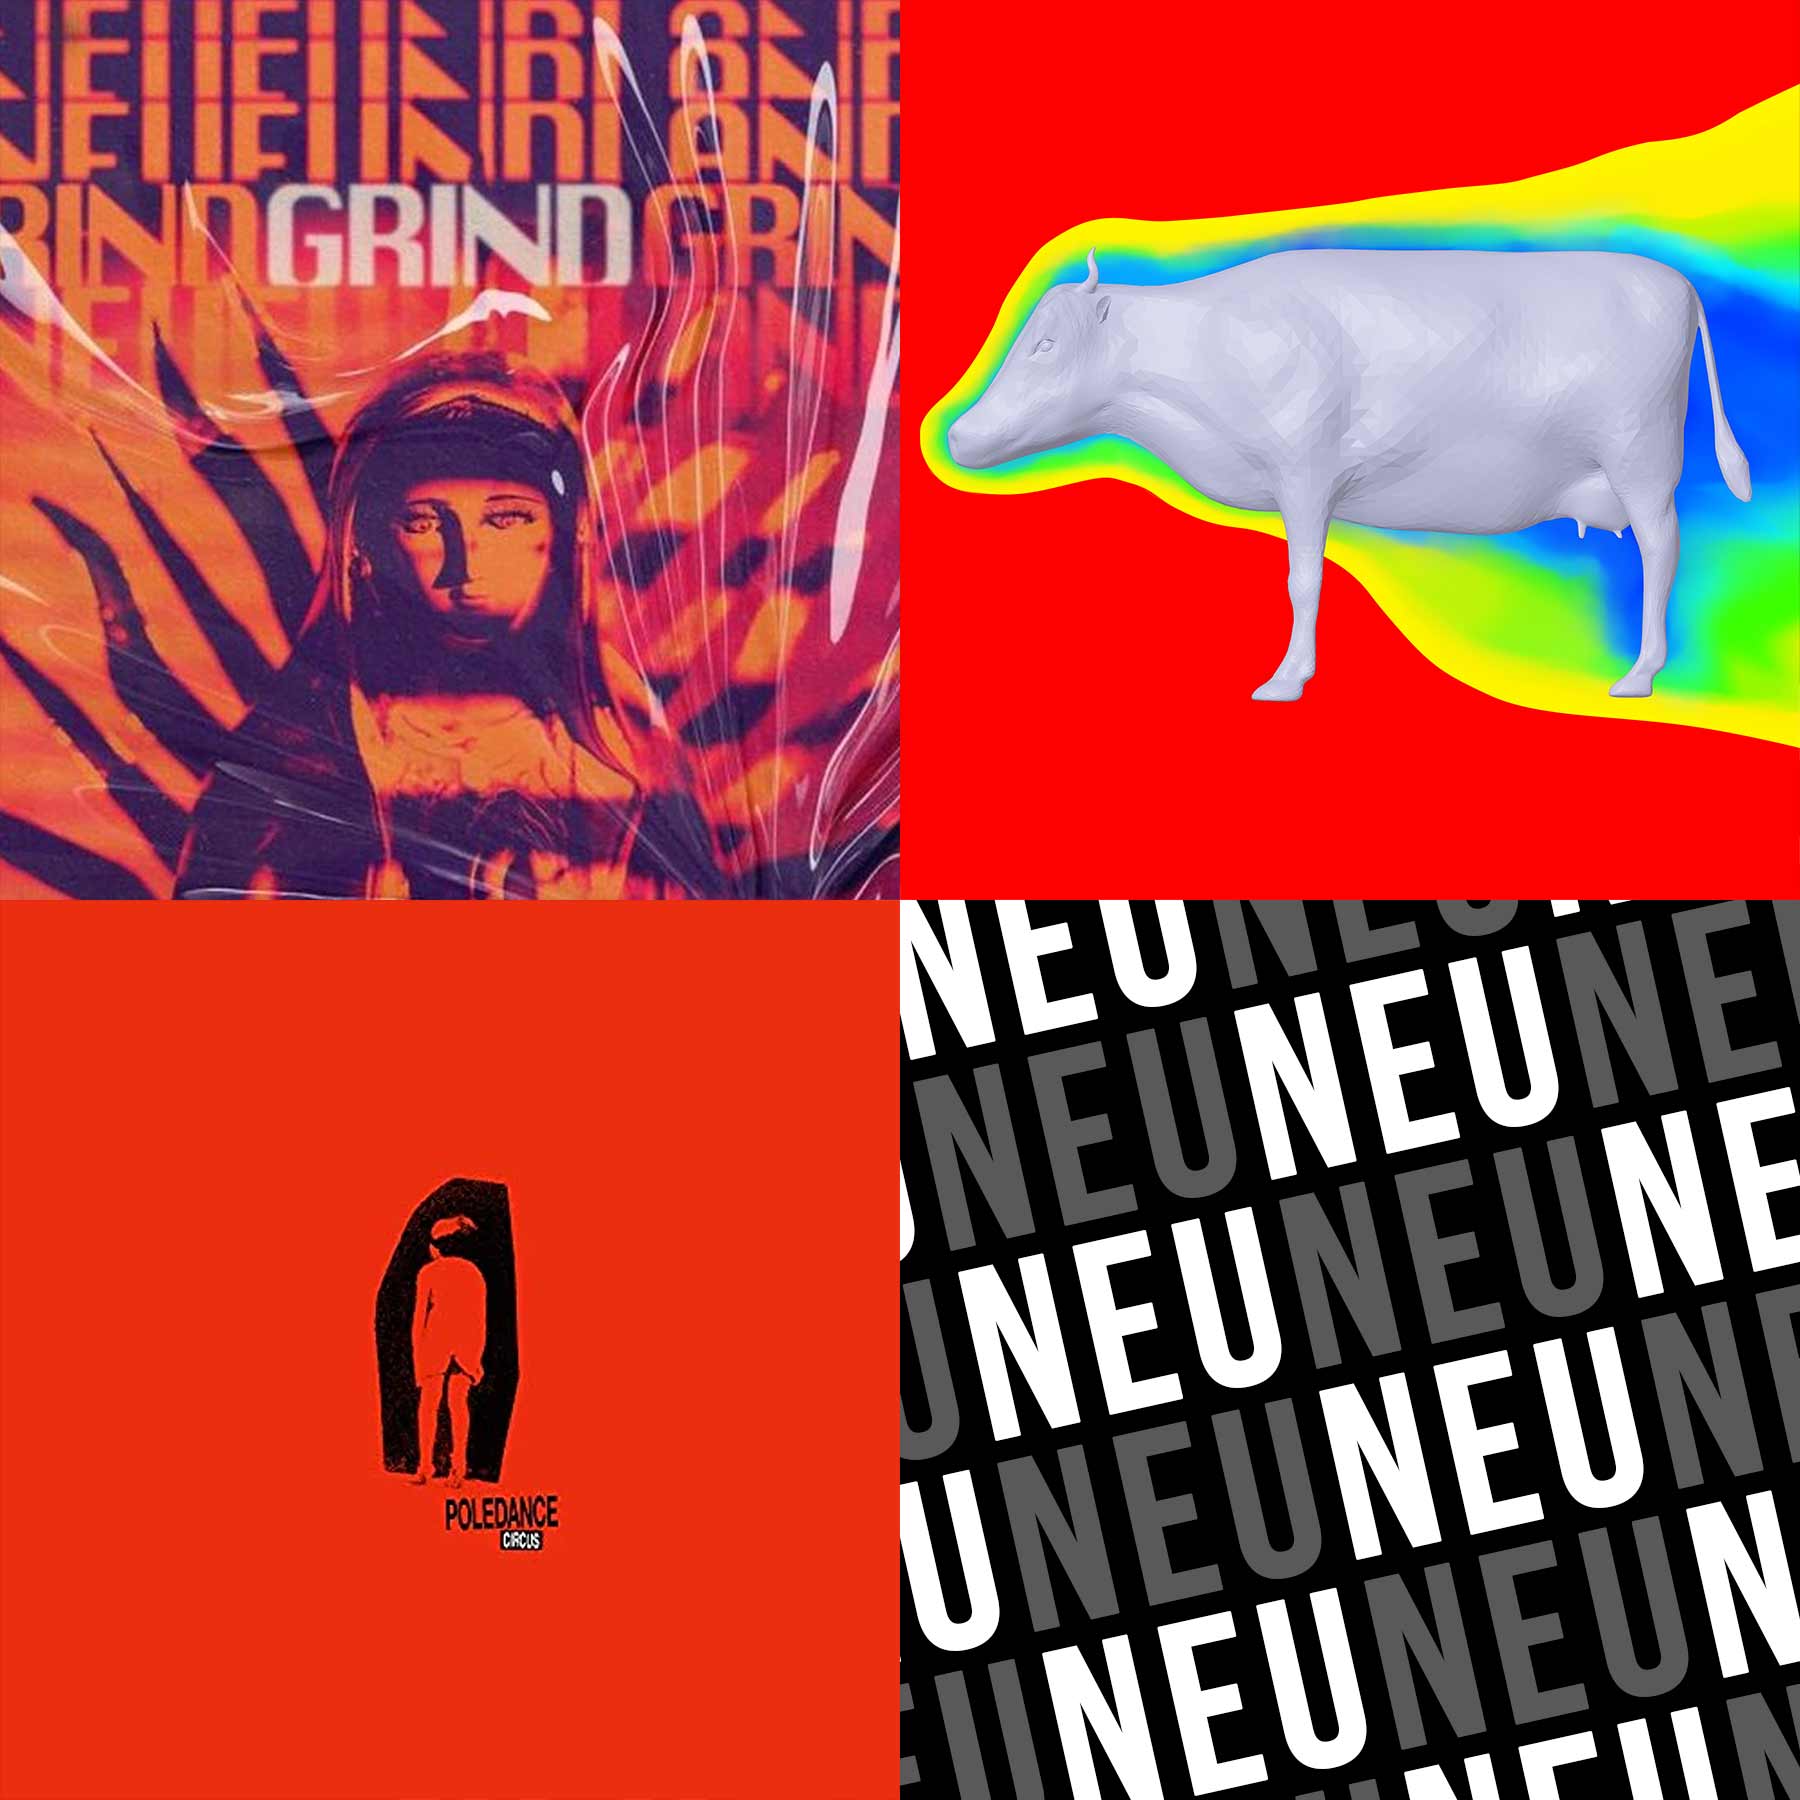 Album-Kurzreviews Dezember 2022: Neues von Neufundland, The Planetoids & mehr neue-alben-kurzreviews-dezember-2022 